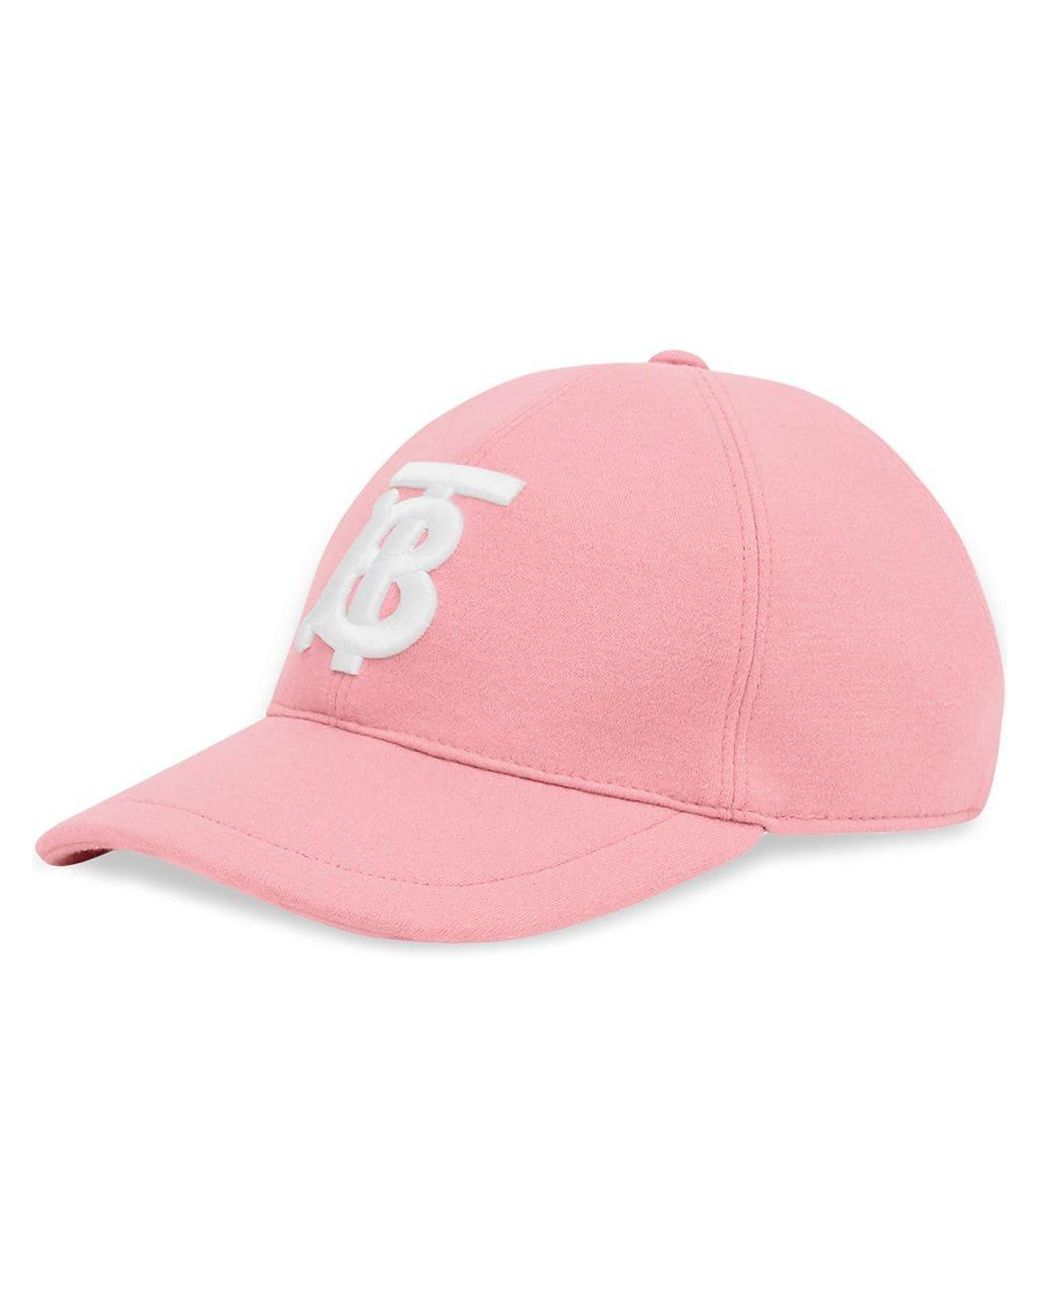 Burberry Monogram Motif Baseball Cap in Pink | Lyst